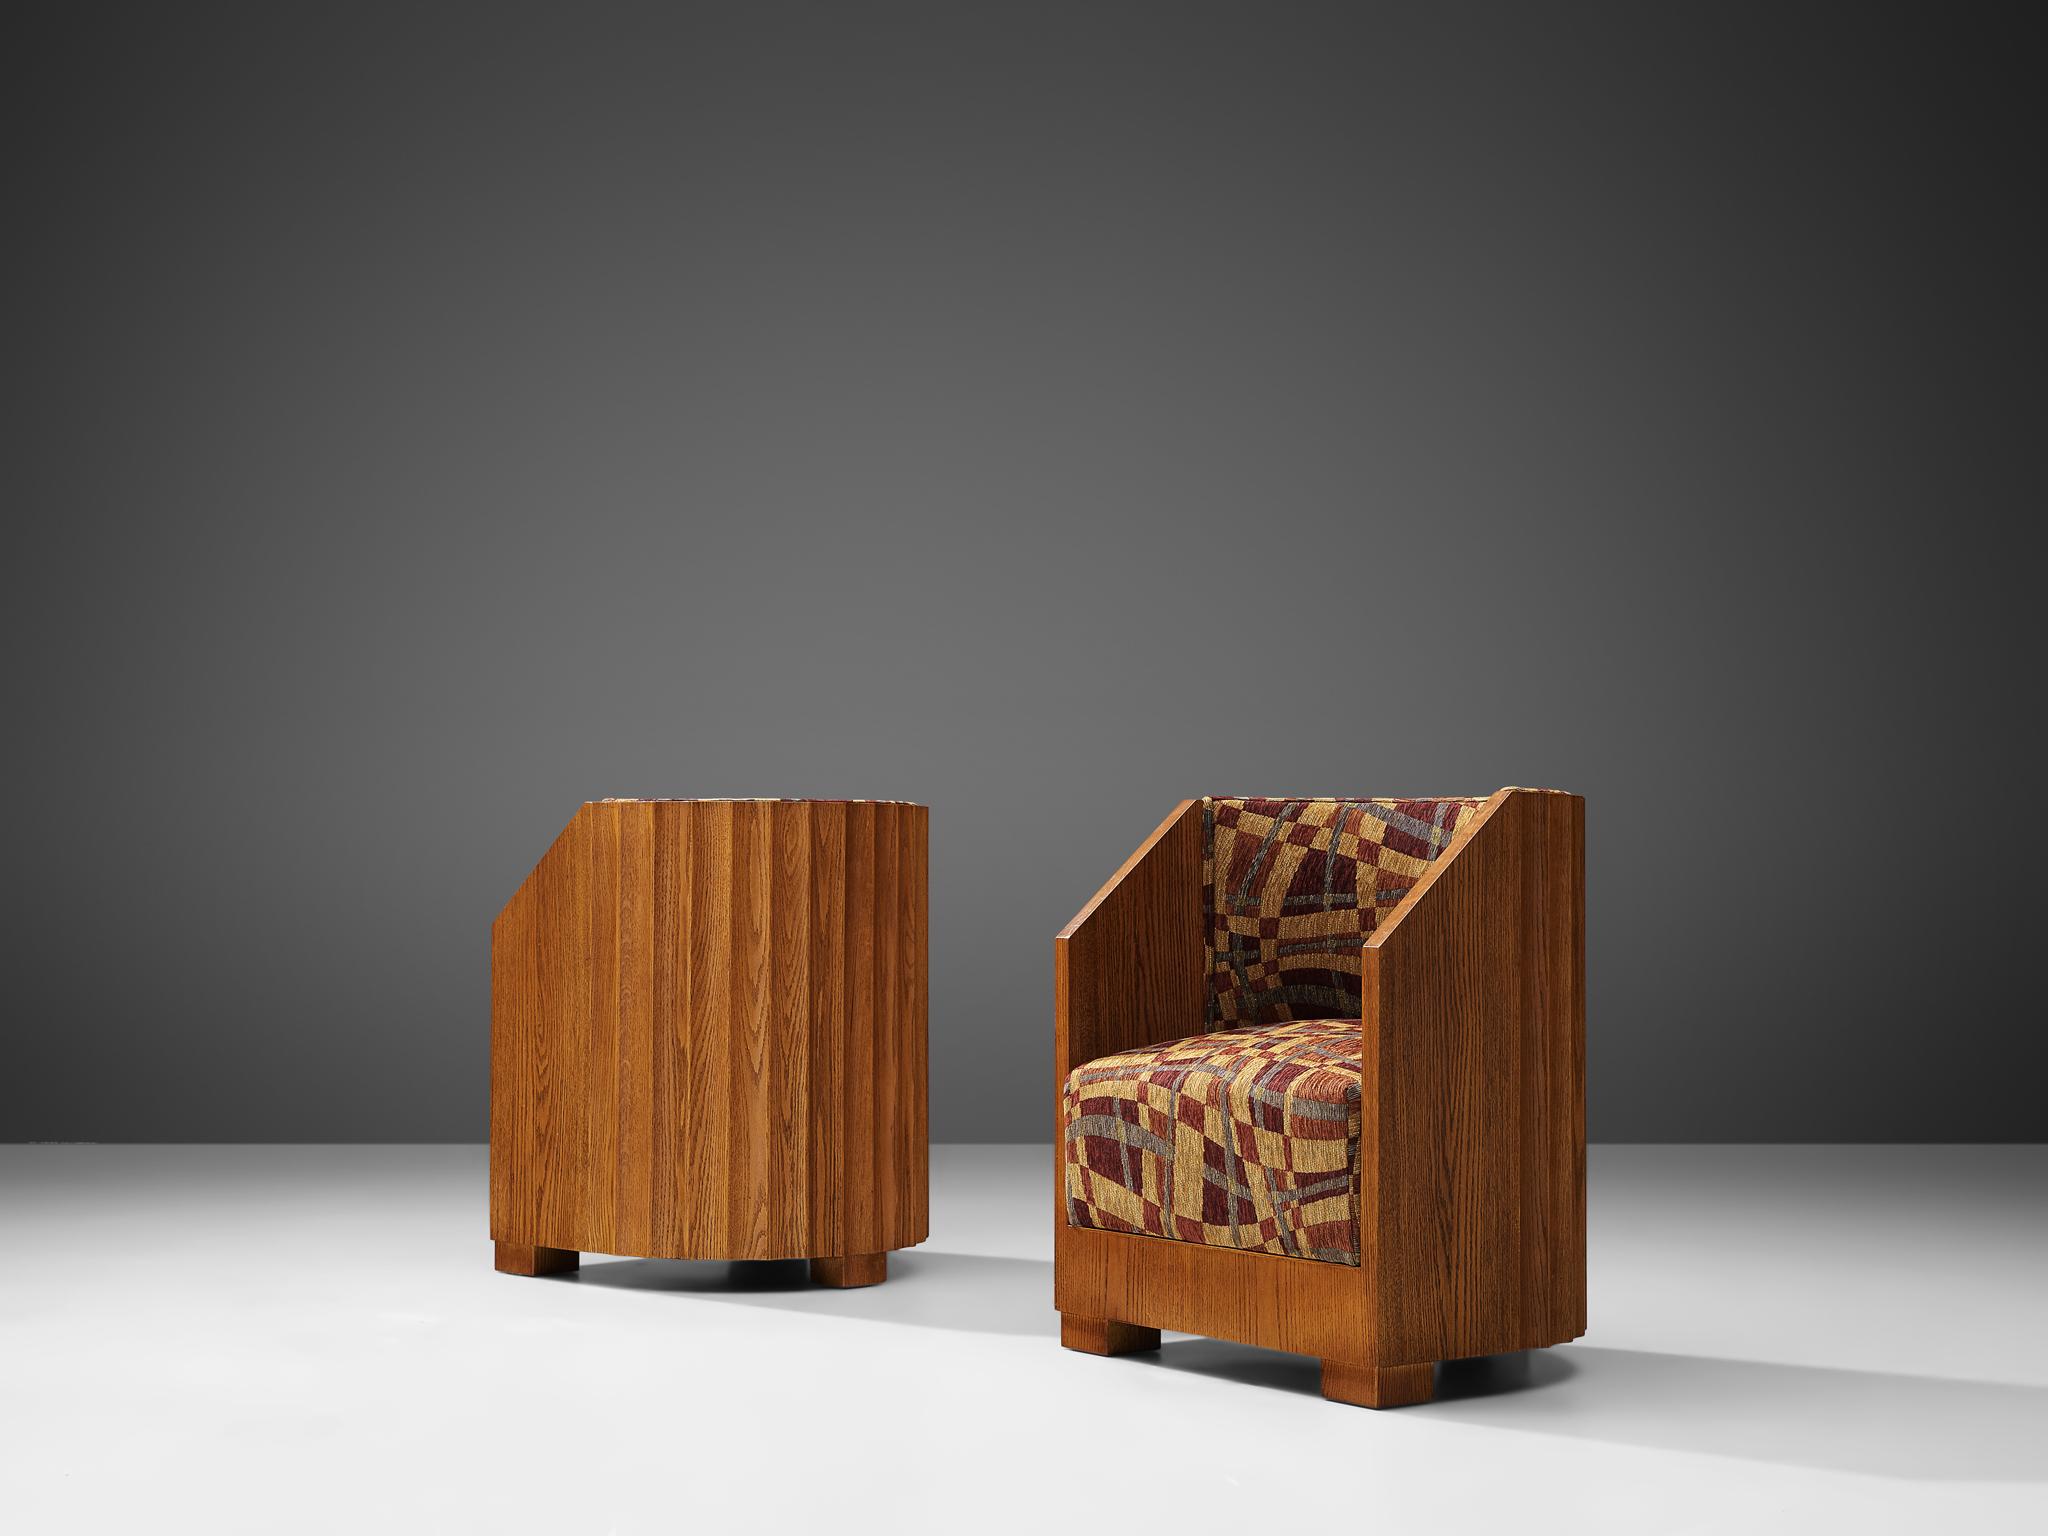 Fauteuils Art déco, chêne, tapisserie à motifs multicolores, États-Unis, années 1920

Un ensemble de chaises Art Déco confortables et élégantes en chêne. Ces chaises ont un aspect sculptural avec leurs dossiers dentelés en chêne. Le bois de chêne